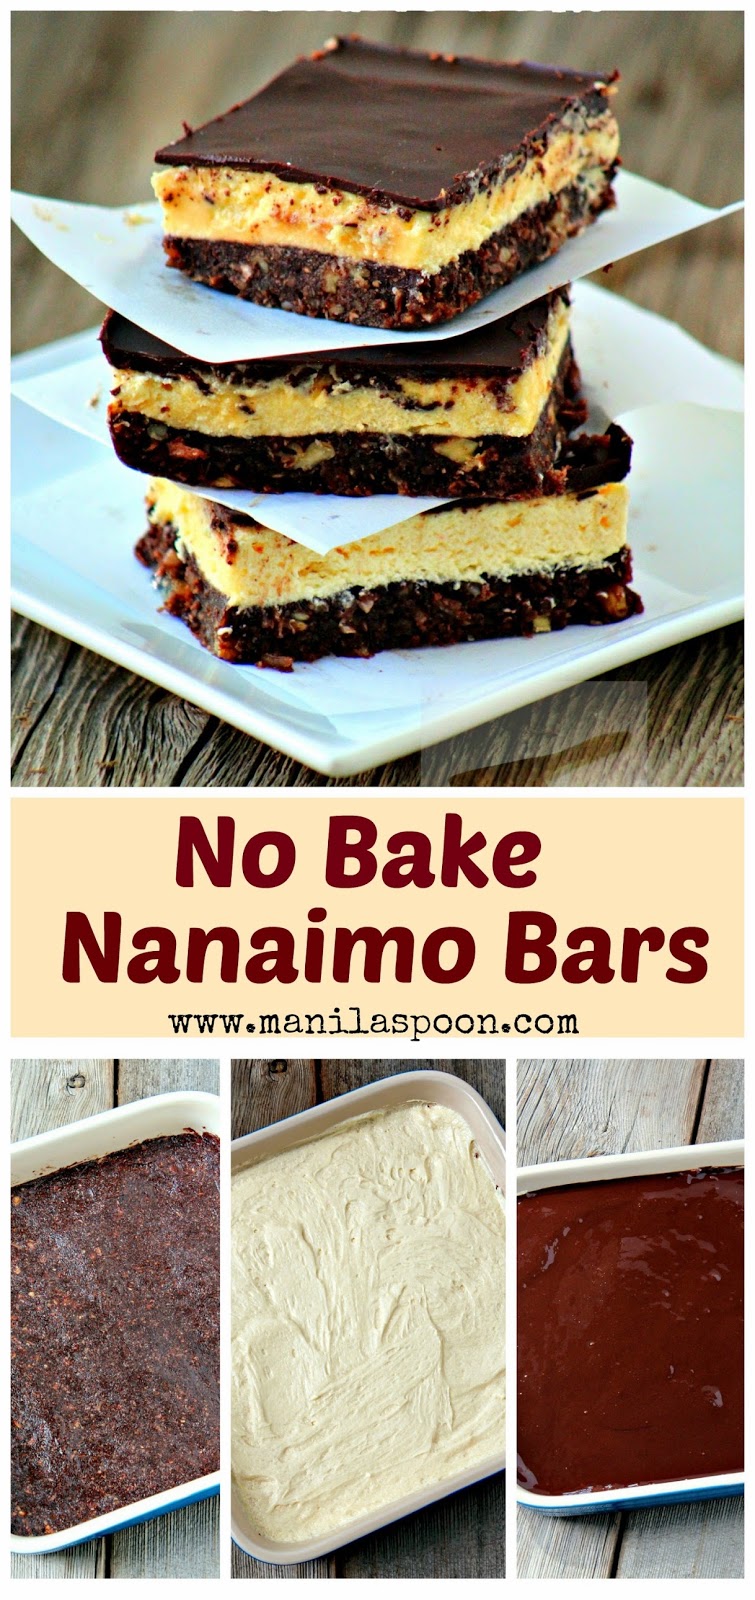 Nanaimo Bars